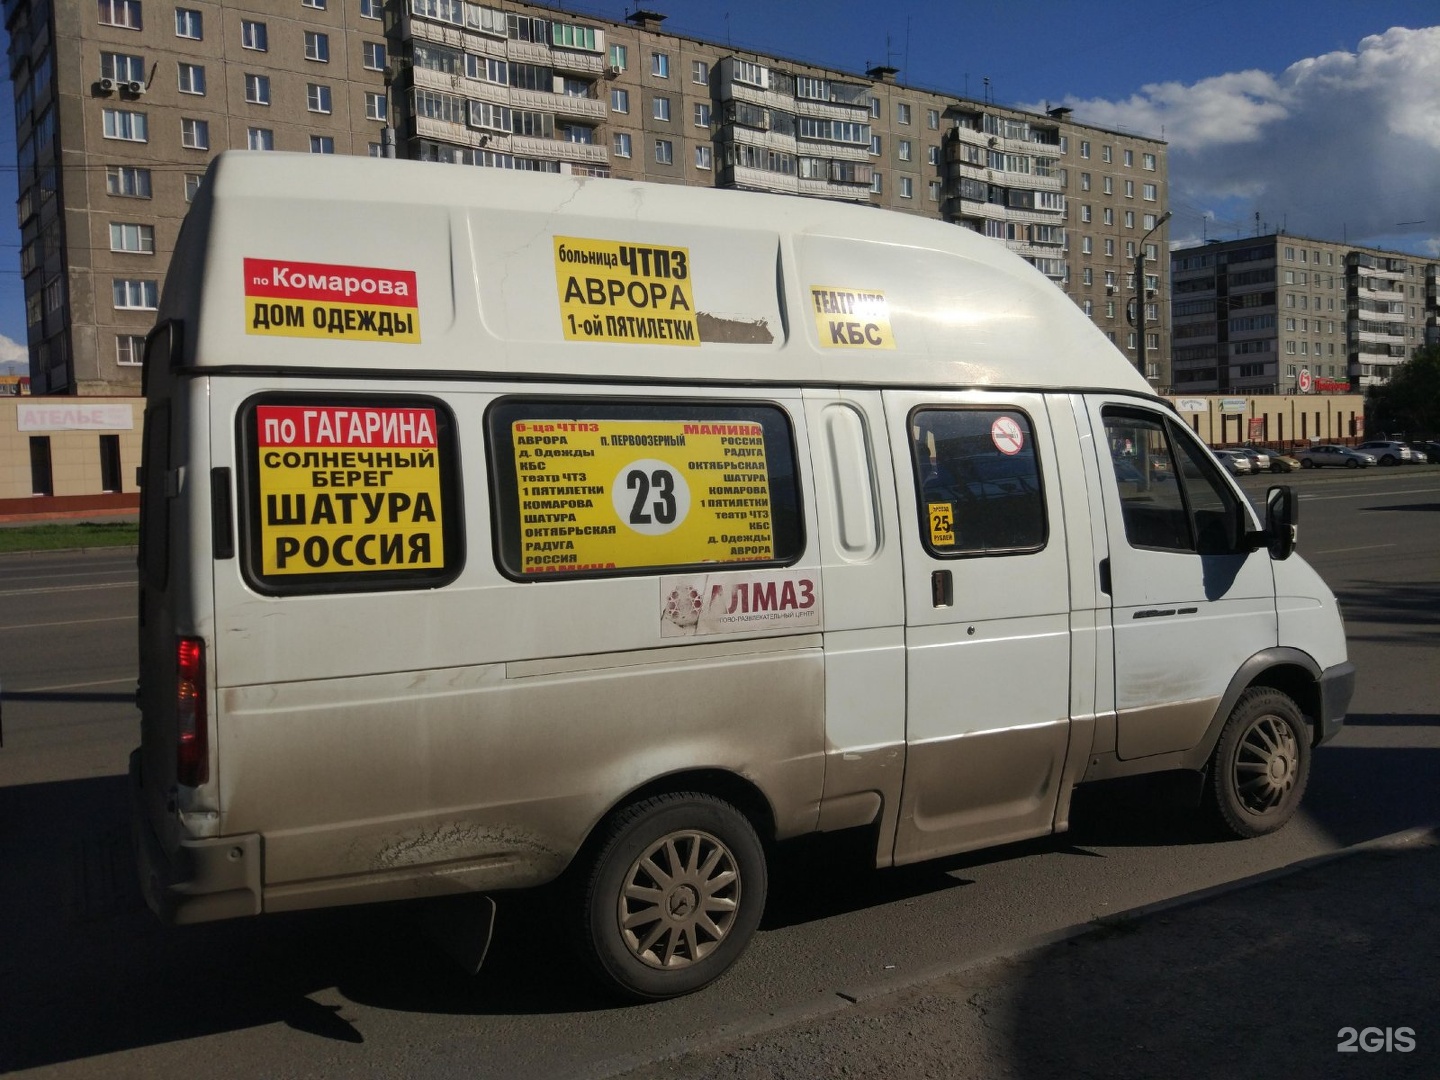 6 маршрутных такси 3. Маршрутка. Маршрутное такси Челябинск. К32 маршрутное такси. Челябинское маршрутное такси.